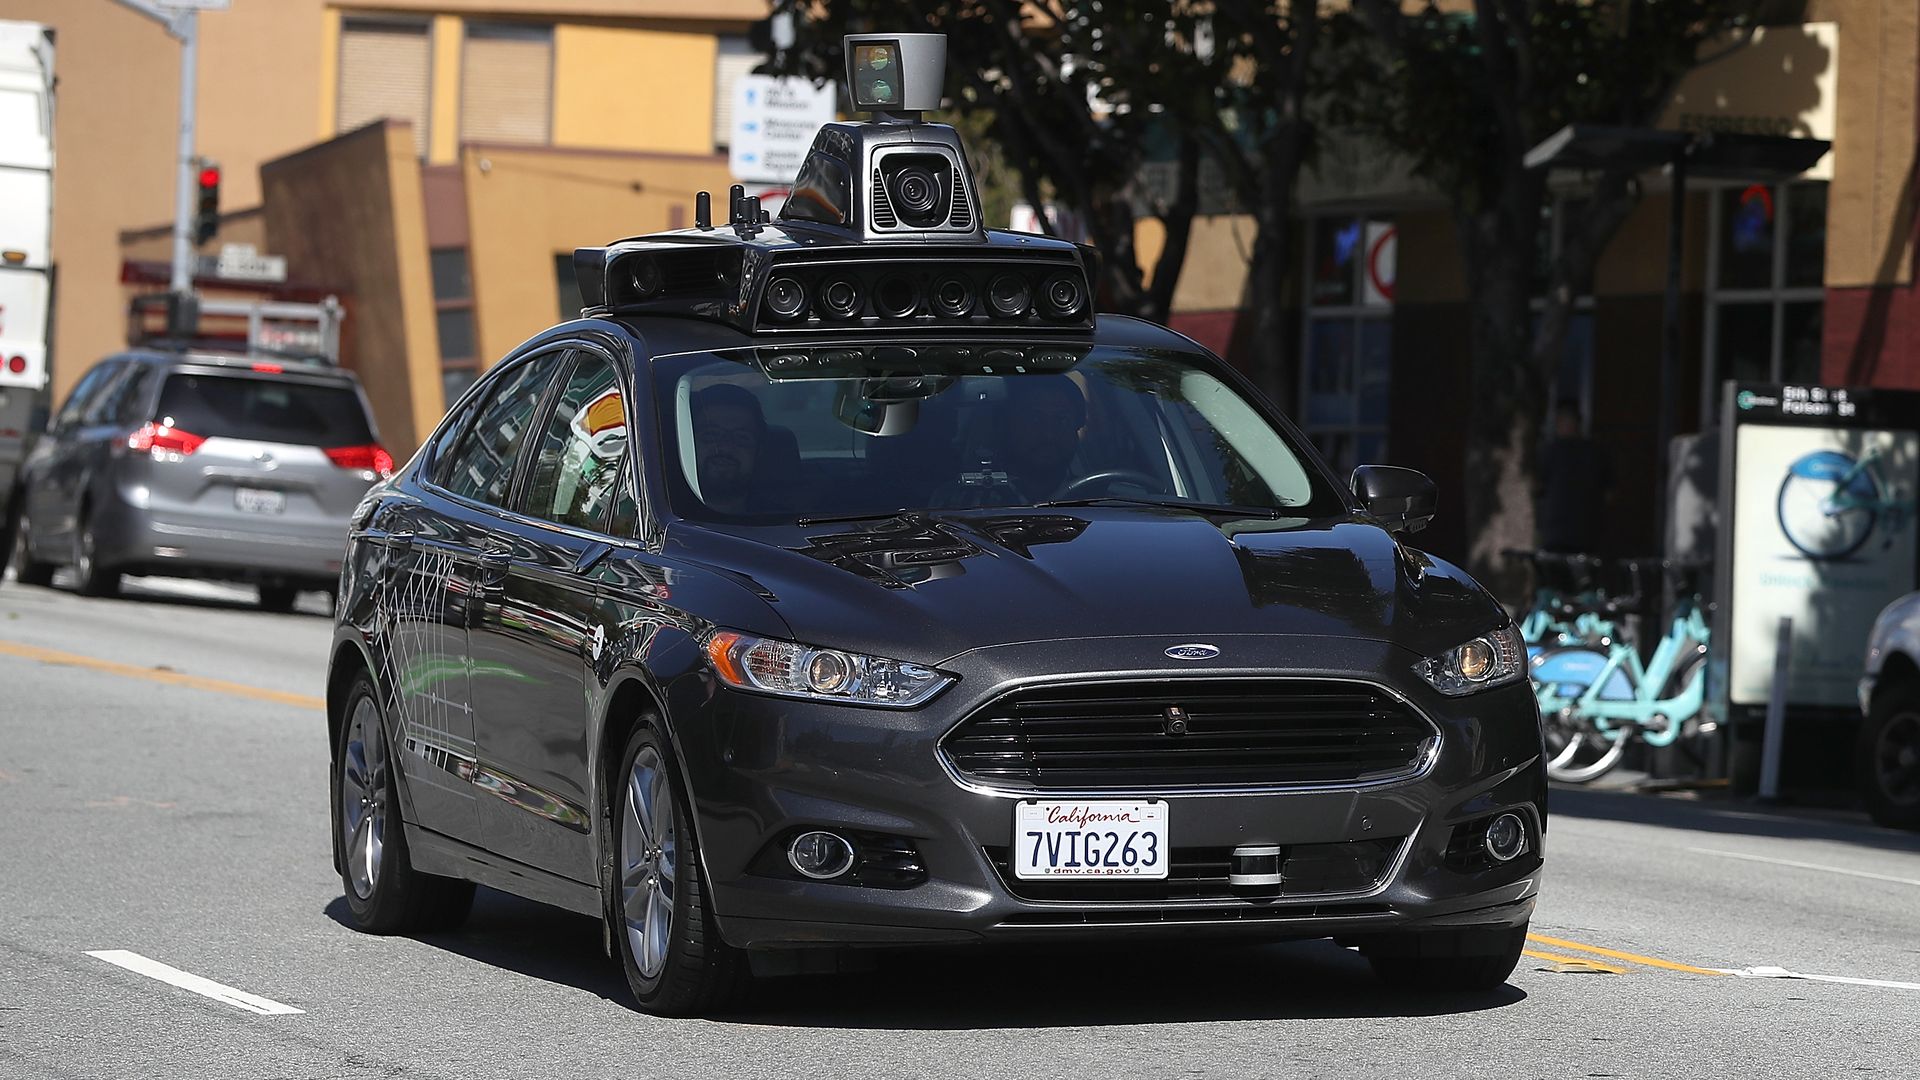 Image of Uber self-driving car